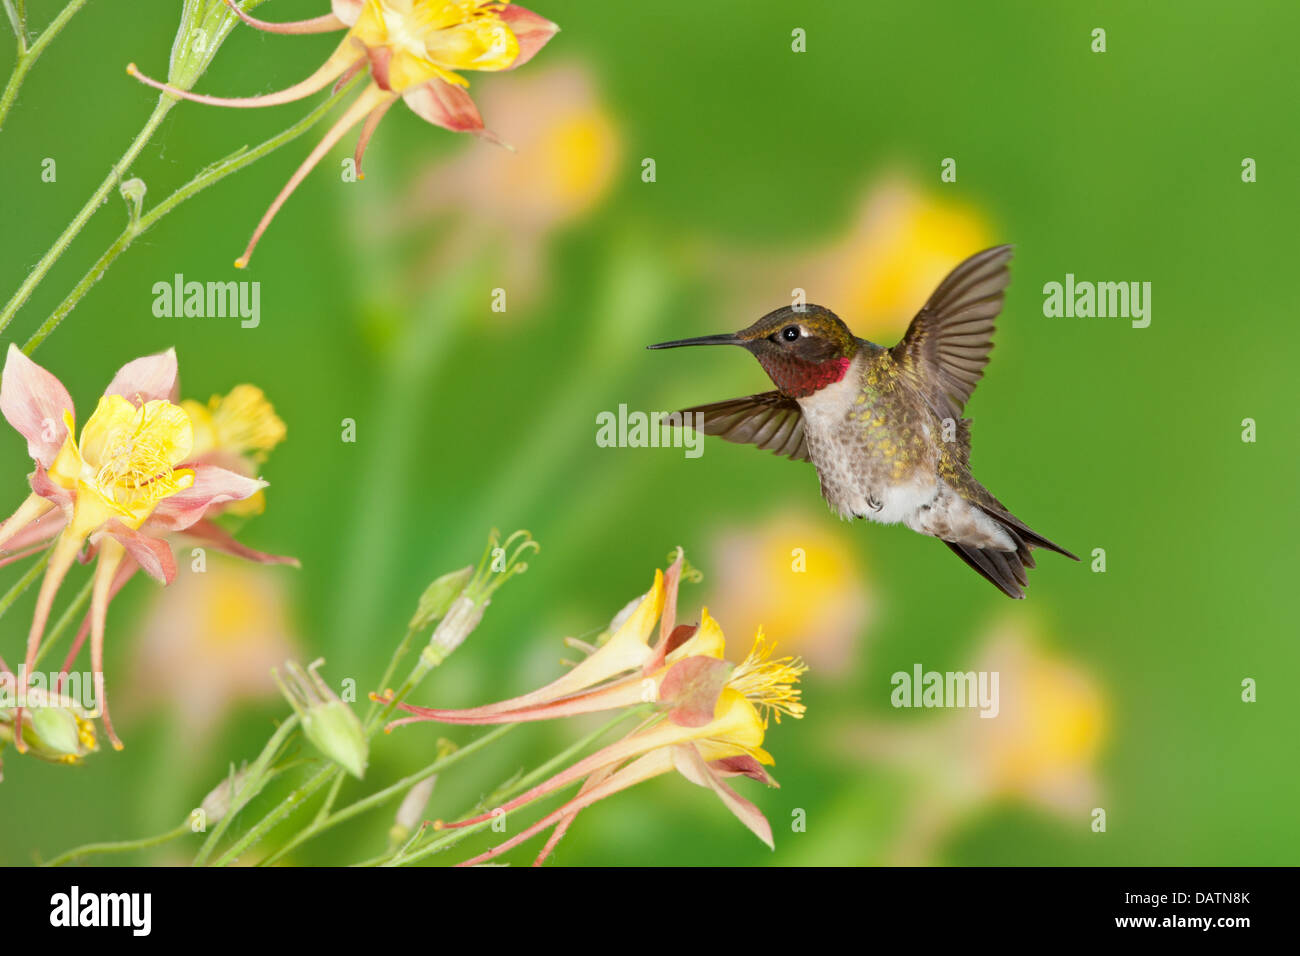 Maschio Hummingbird Ruby-throated in cerca di nettare da Columbine Fiori uccello Ornitologia Scienza natura ambiente naturale Foto Stock